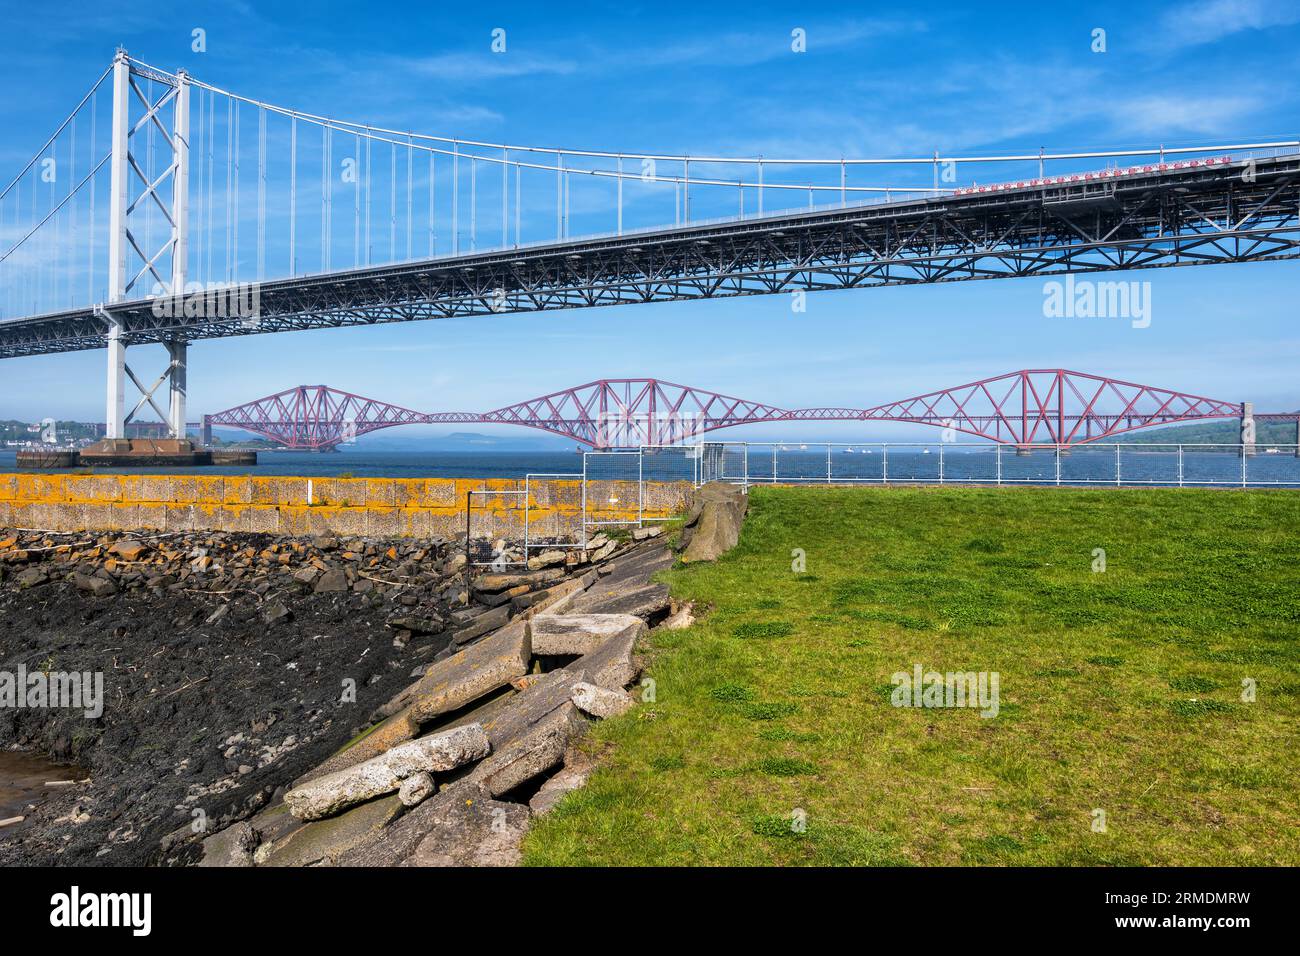 Forth Road Bridge e Forth Bridge attraverso l'estuario Firth of Forth in SC otland, Regno Unito. Foto Stock